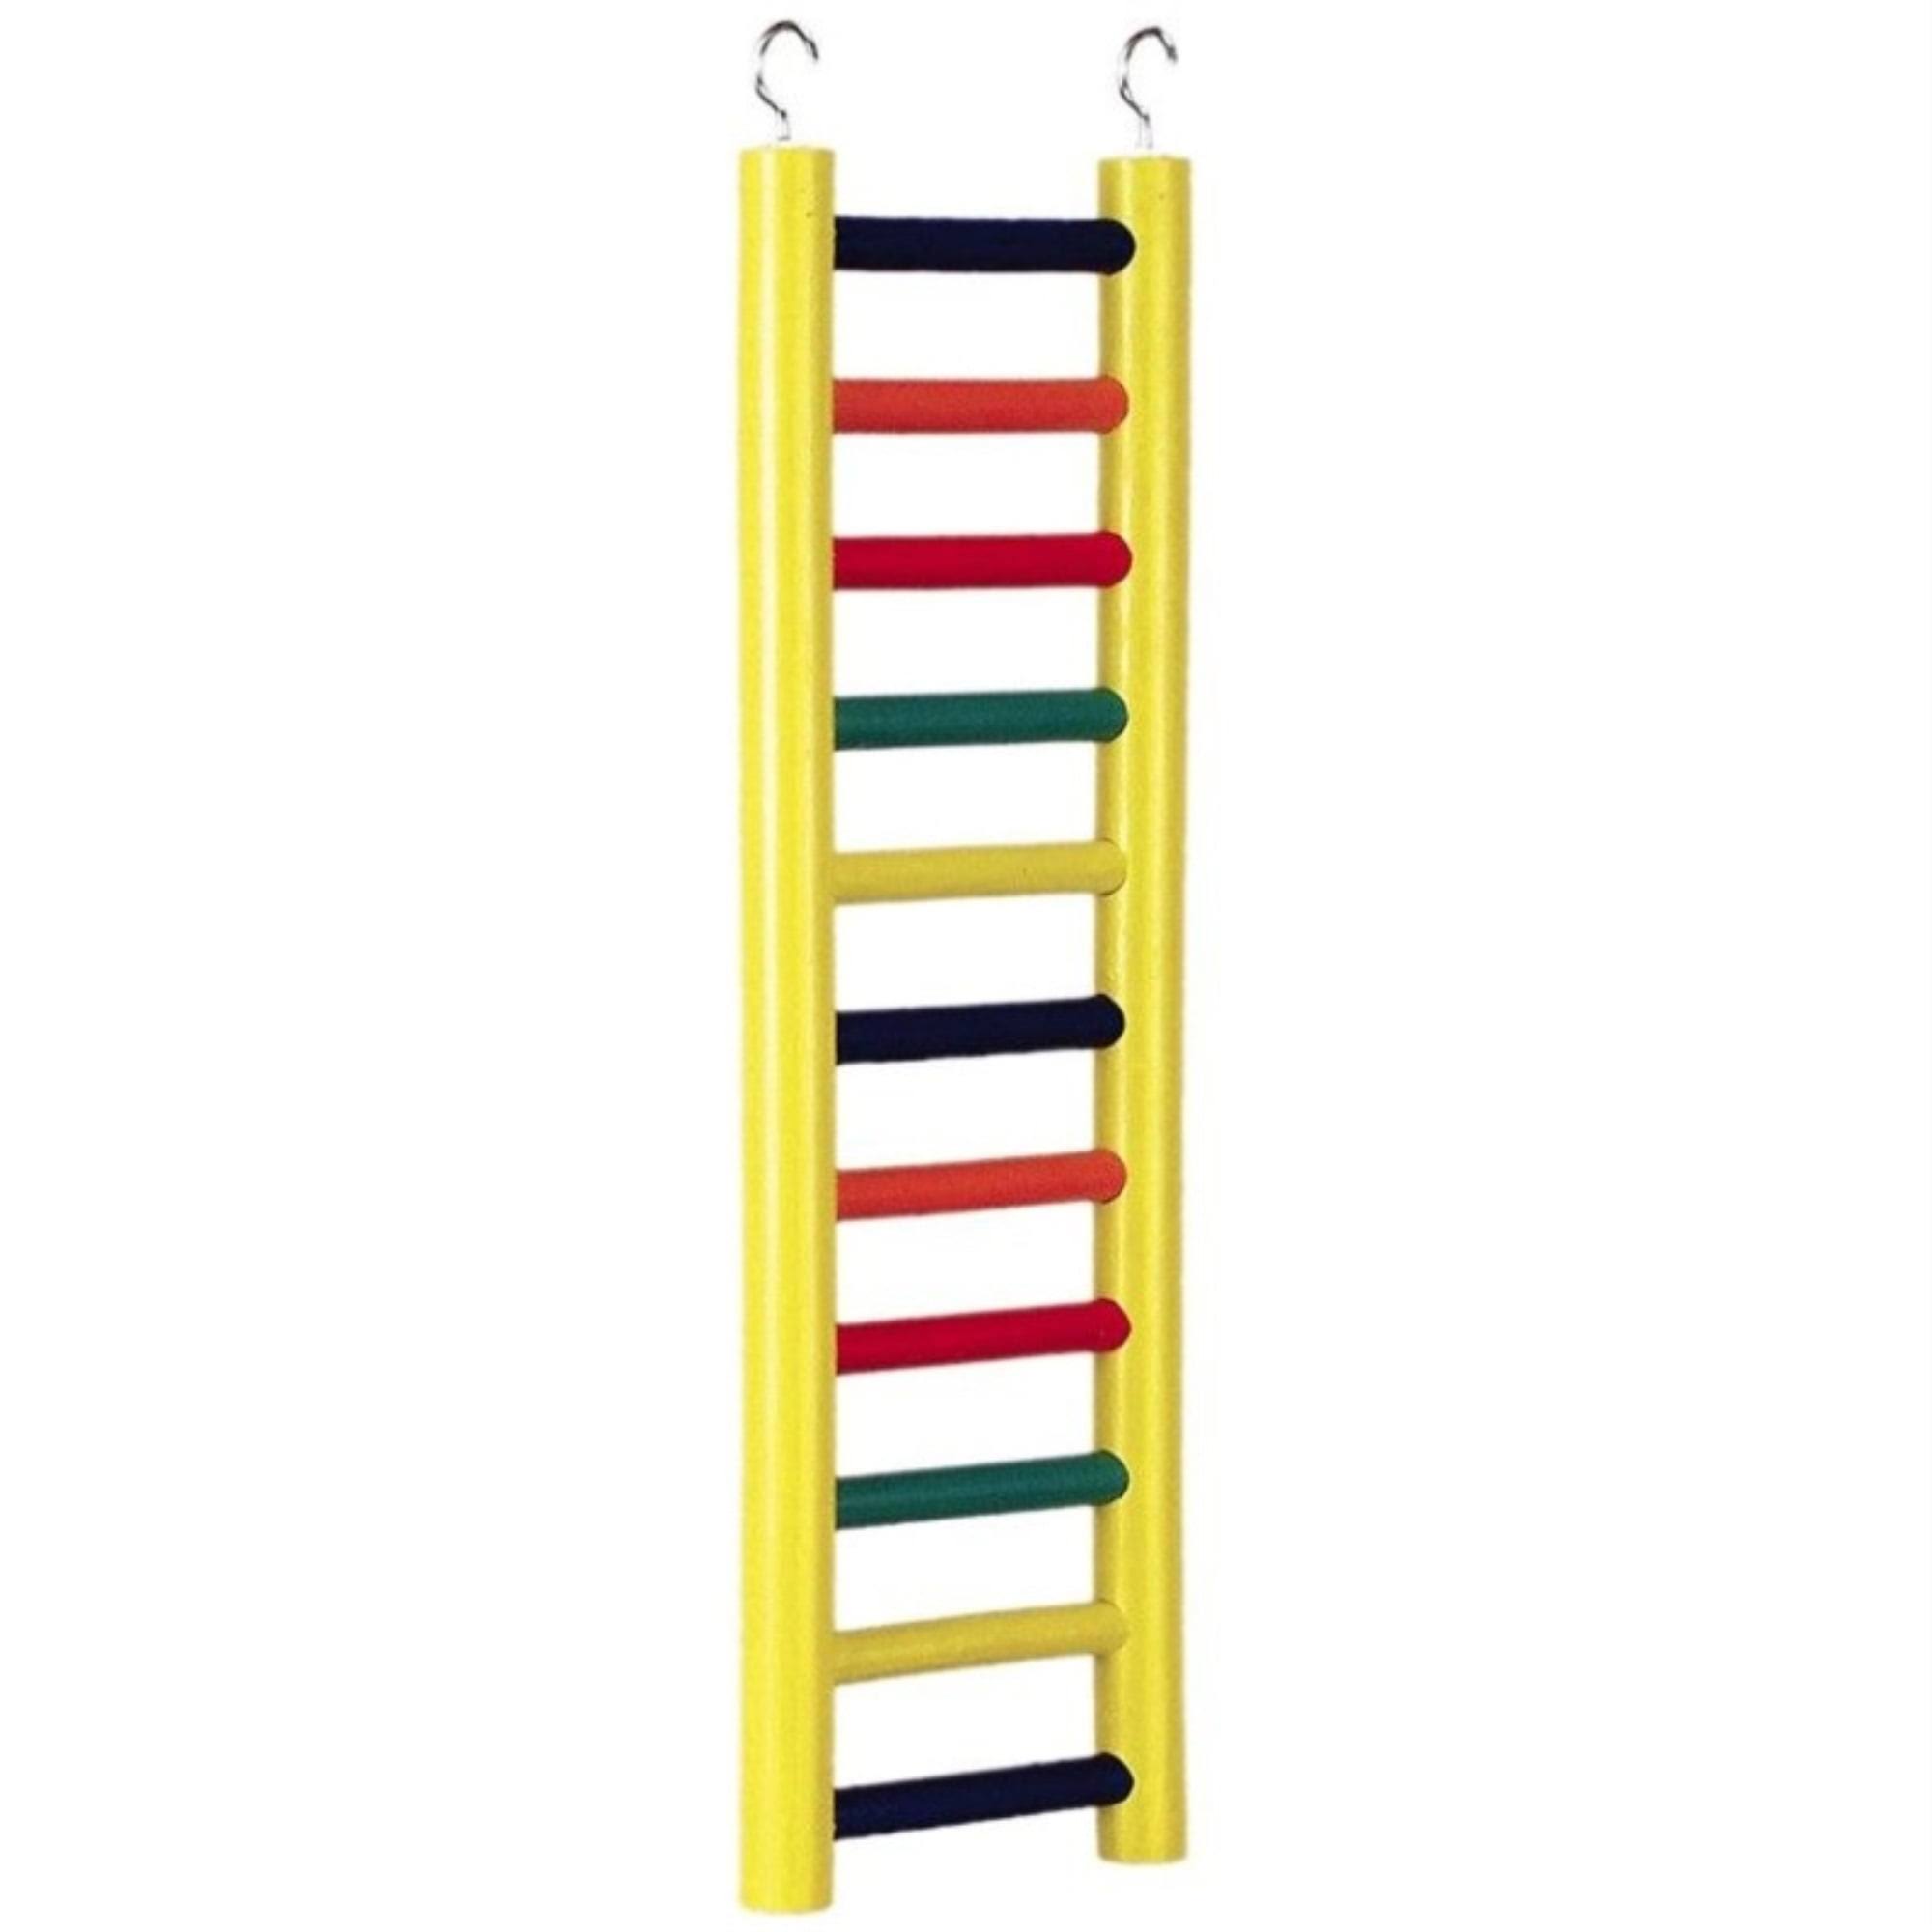 Prevue-Hendryx Bird Wood Ladder - 11 Rung, 18"